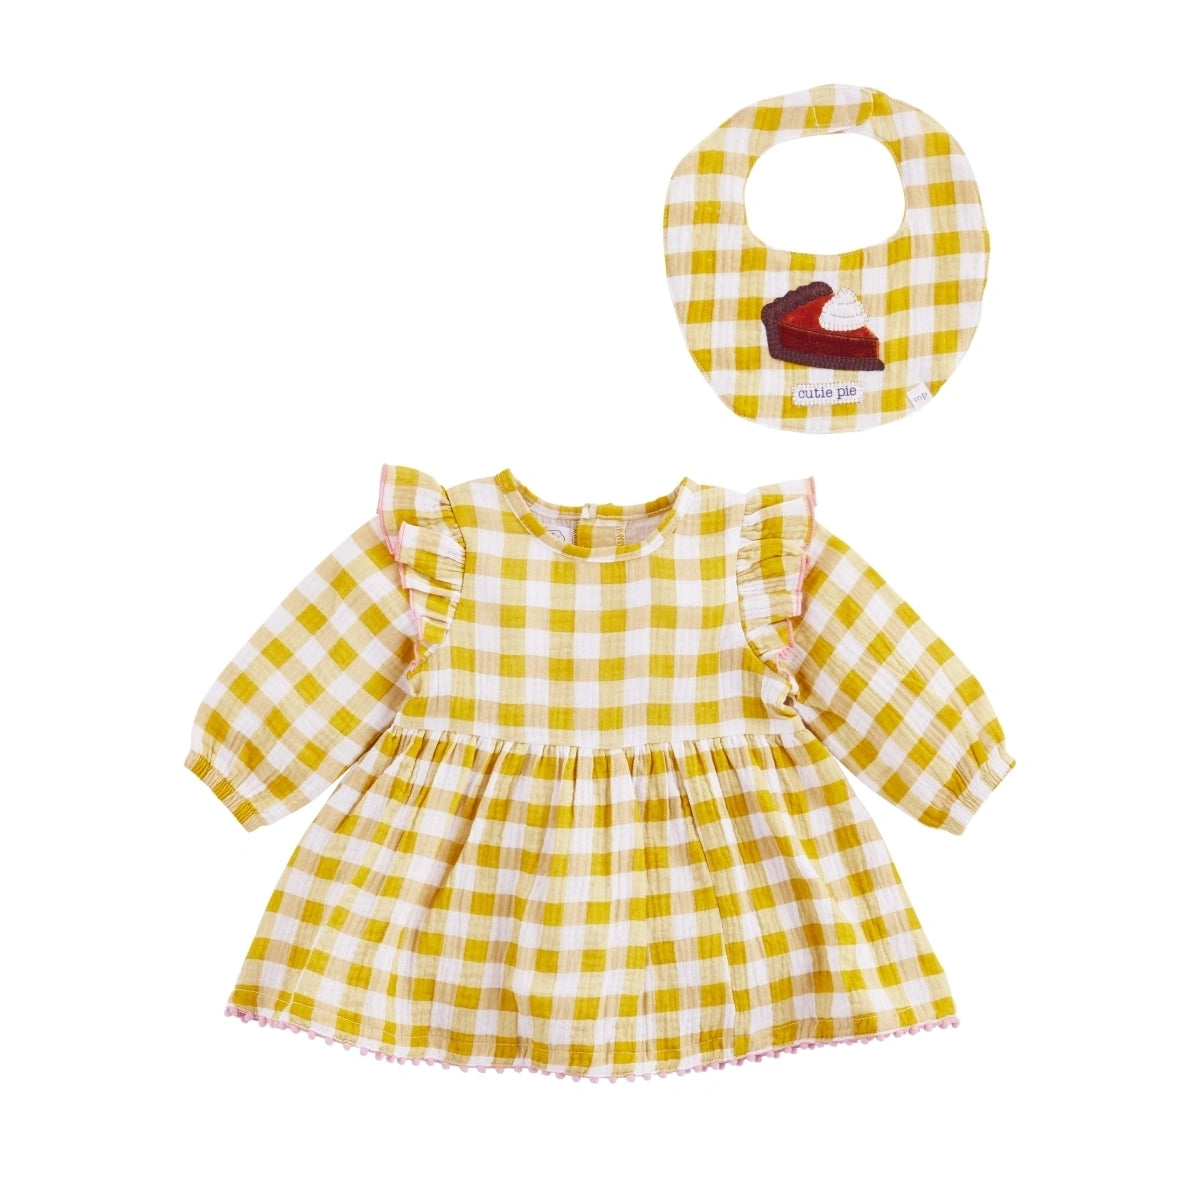 Cutie Pie Dress Set  - Doodlebug's Children's Boutique